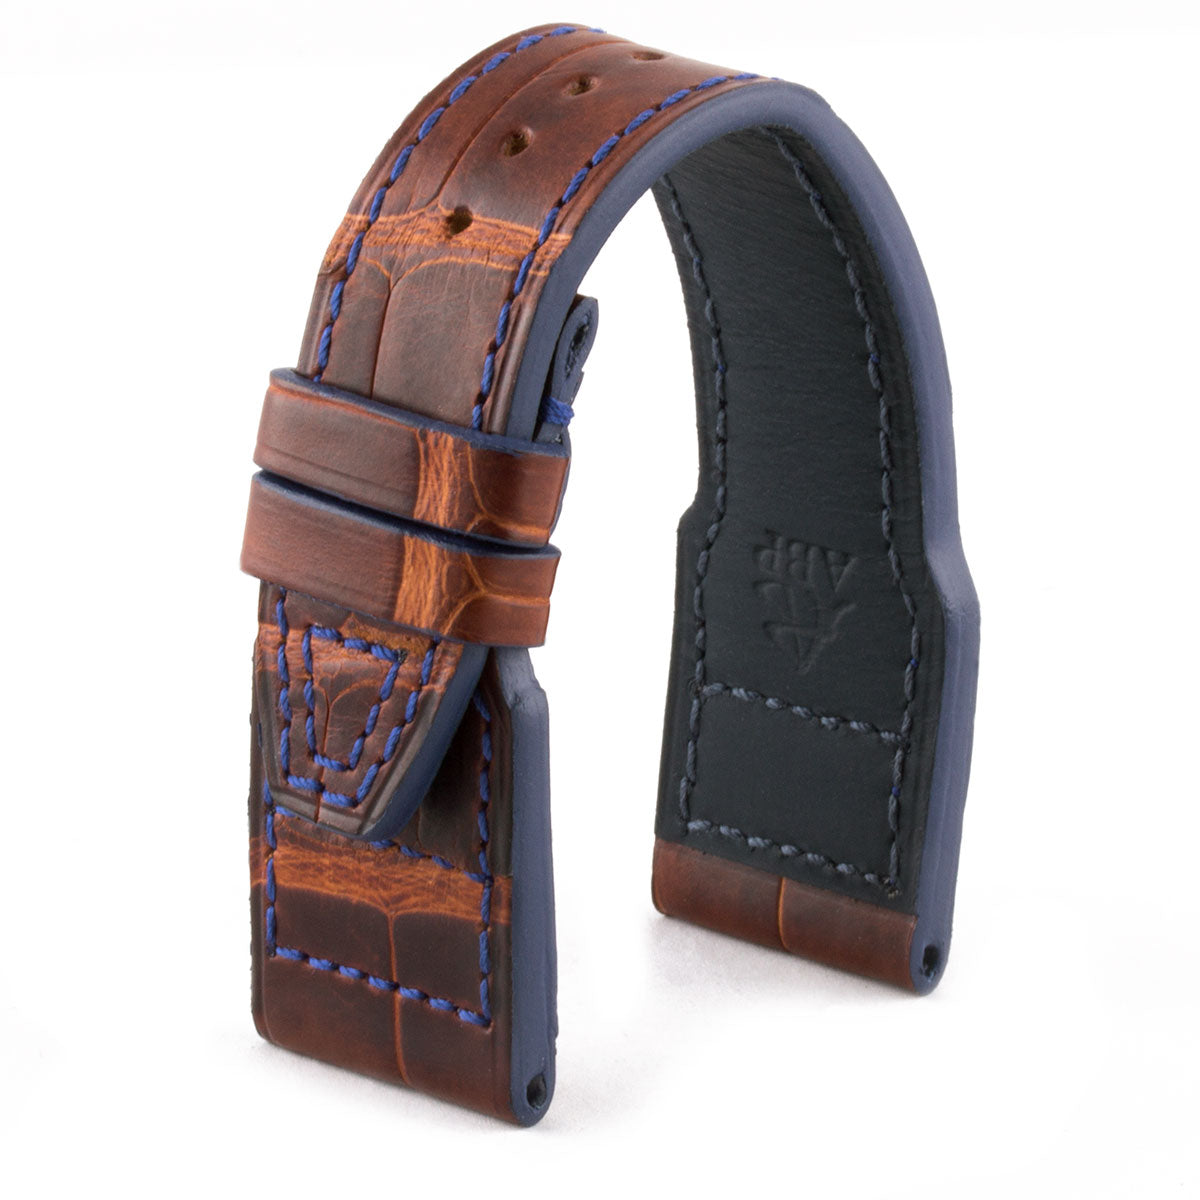 IWC Big Pilot - Bracelet-montre cuir - Alligator tannage spécial marron acajou waxé - watch band leather strap - ABP Concept -